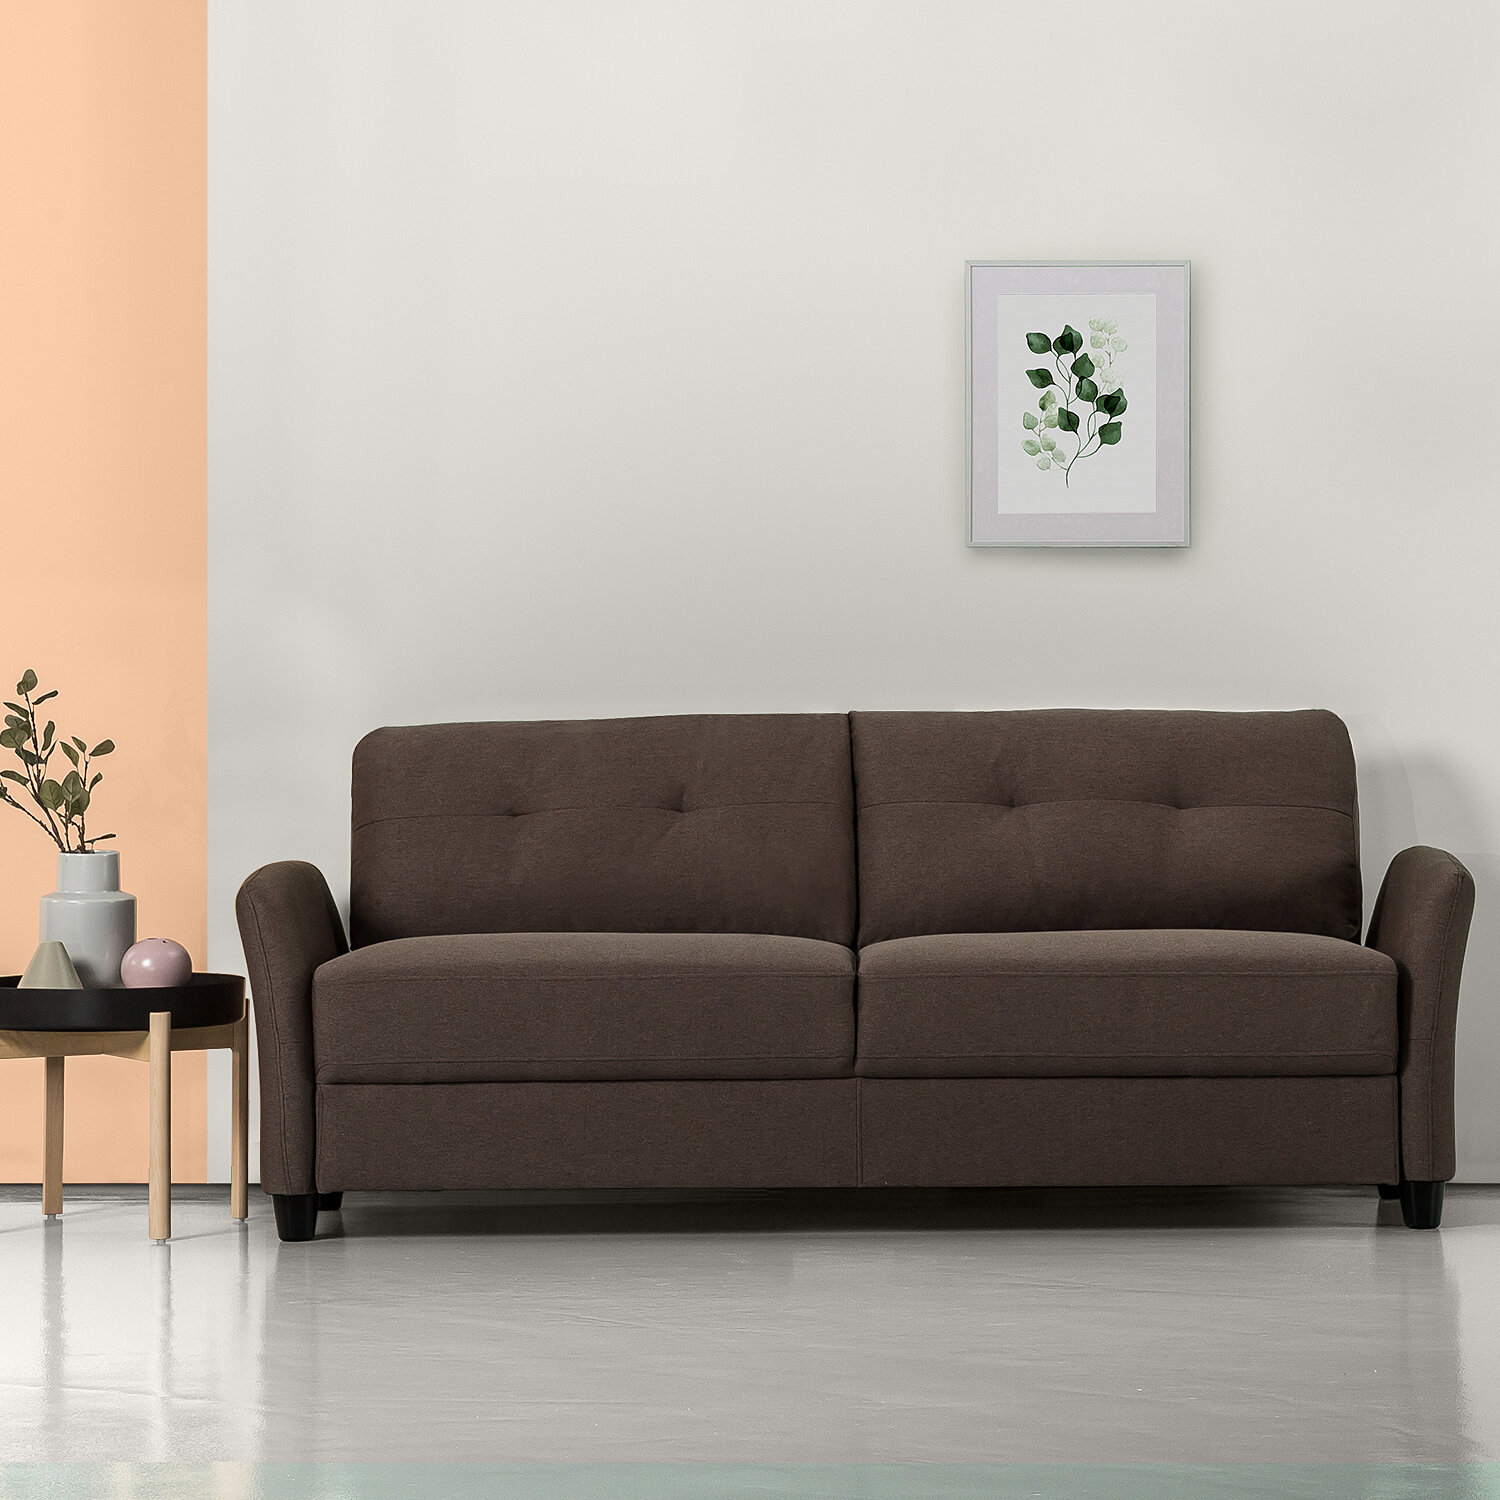 Ebern Designs Graver Upholstered Sofa 192460688826 eBay